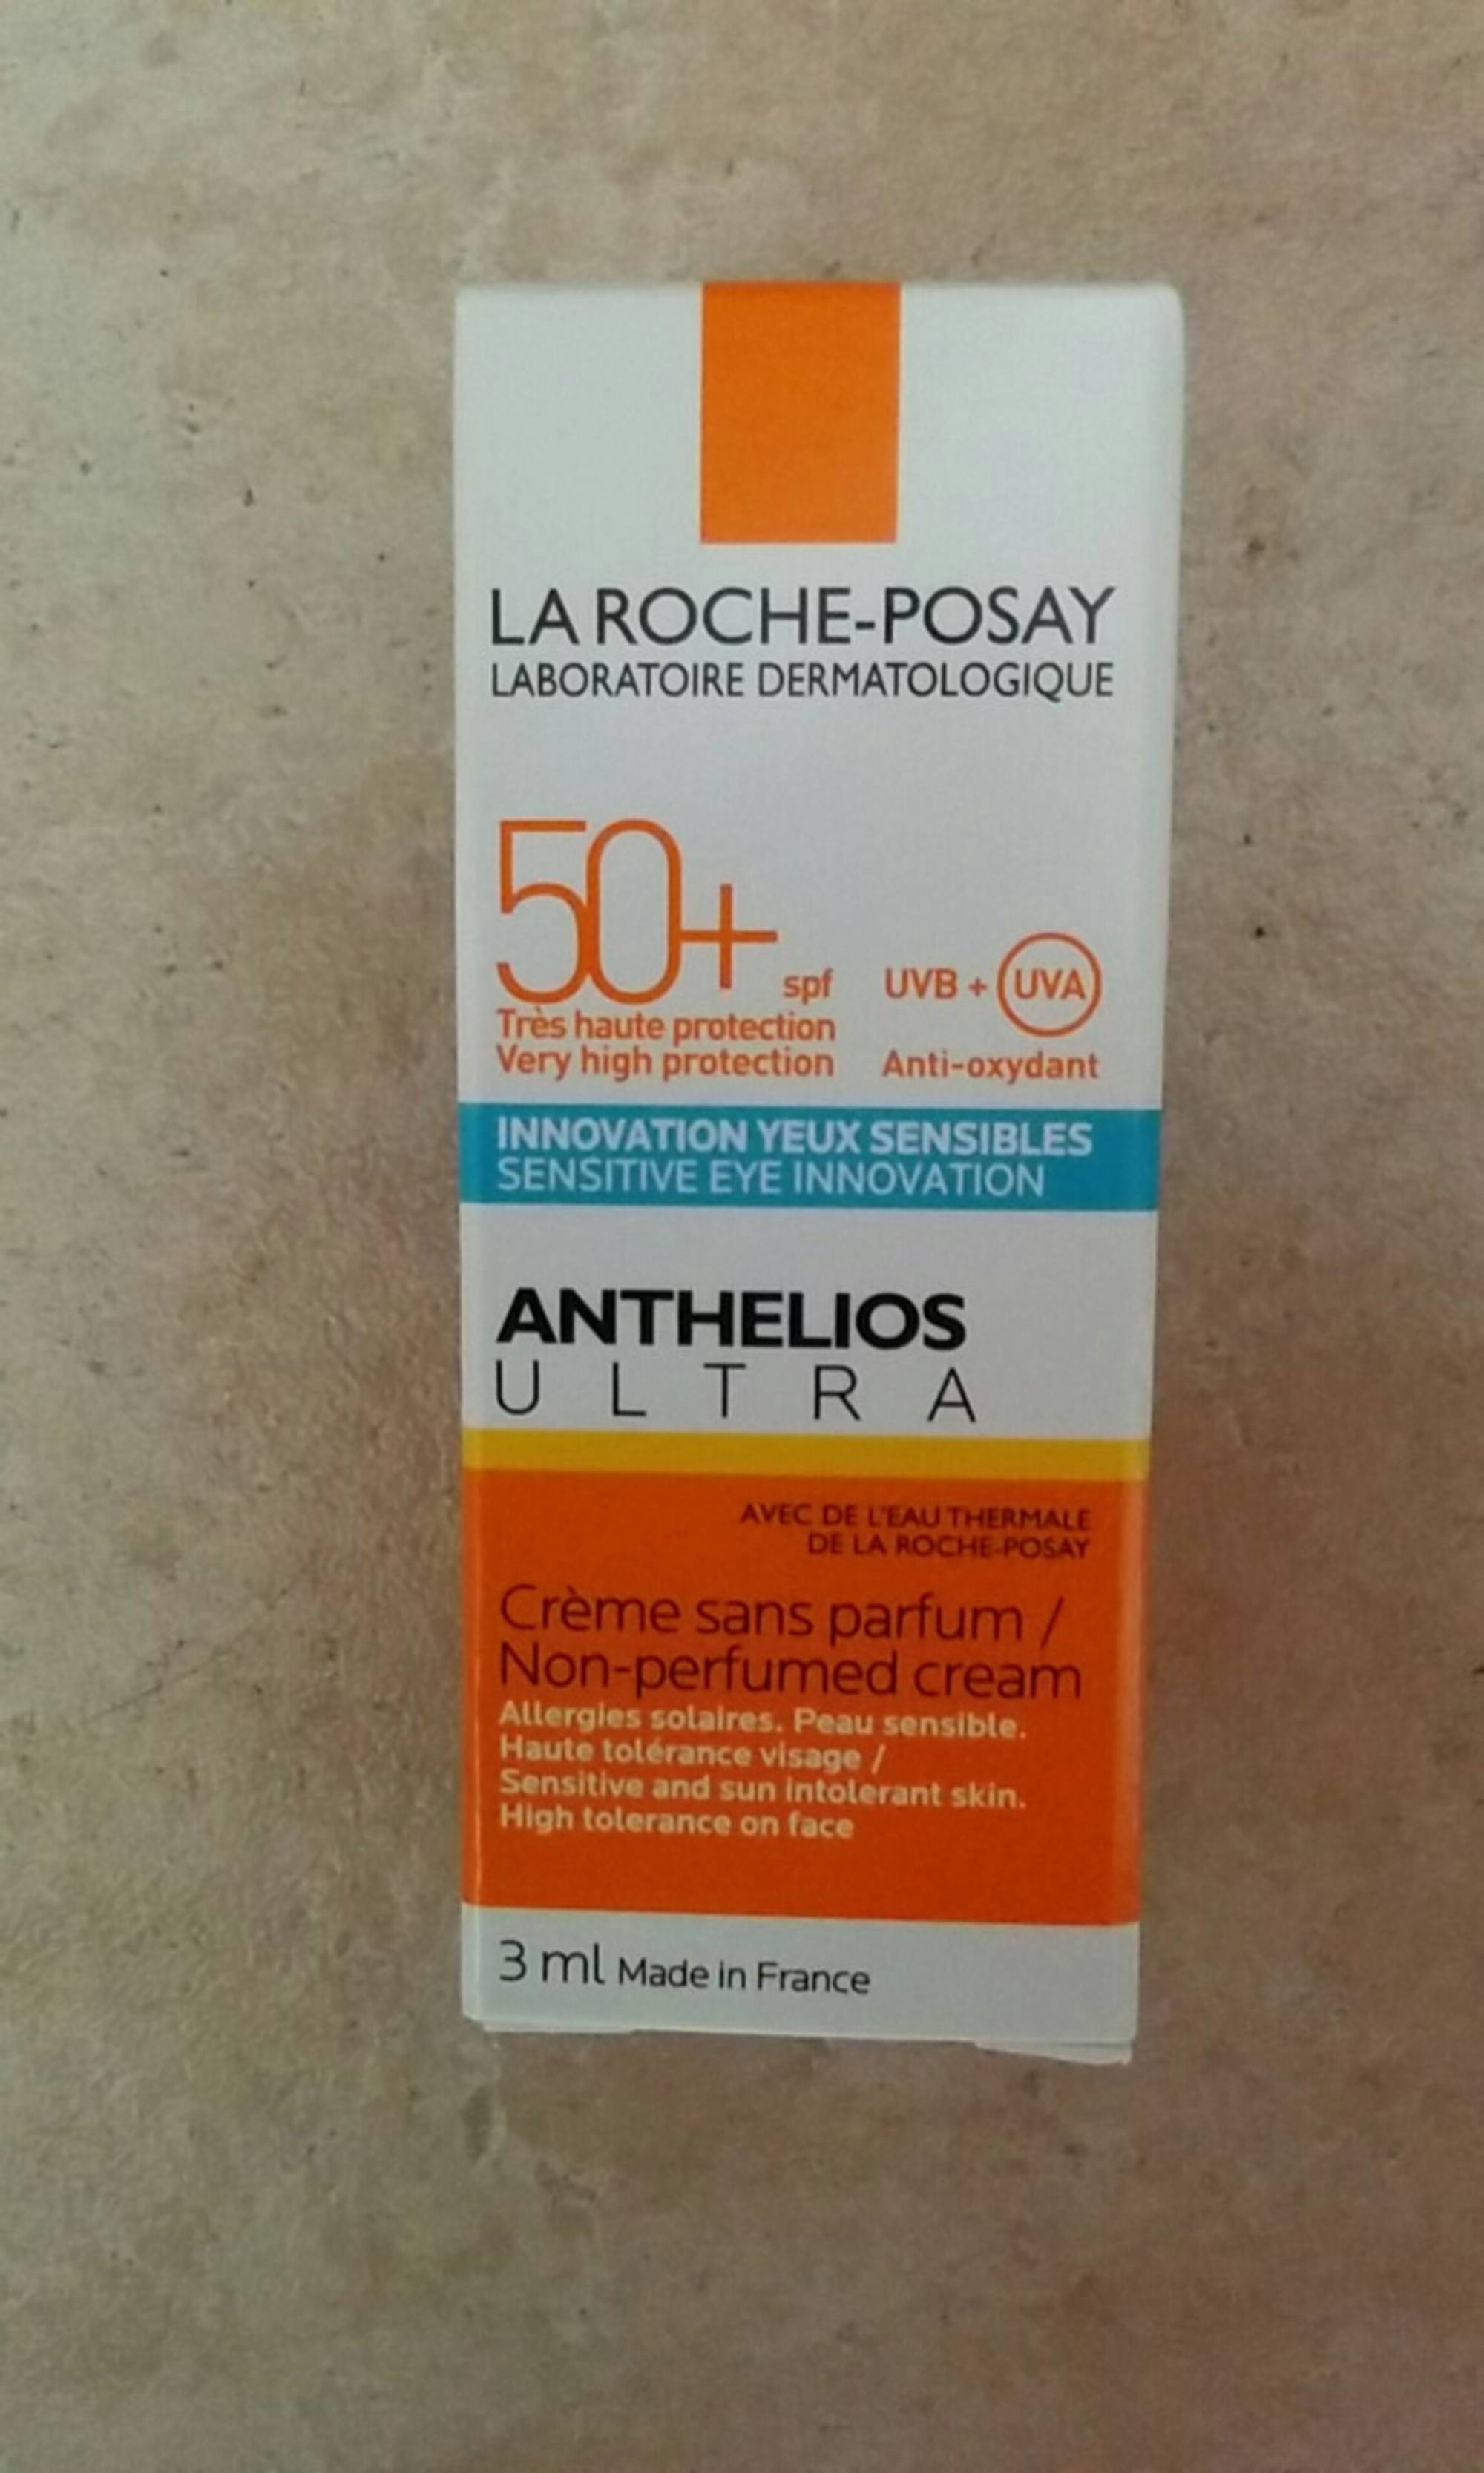 LA ROCHE-POSAY - Anthelios Ultra - Crème sans parfum SPF 50+